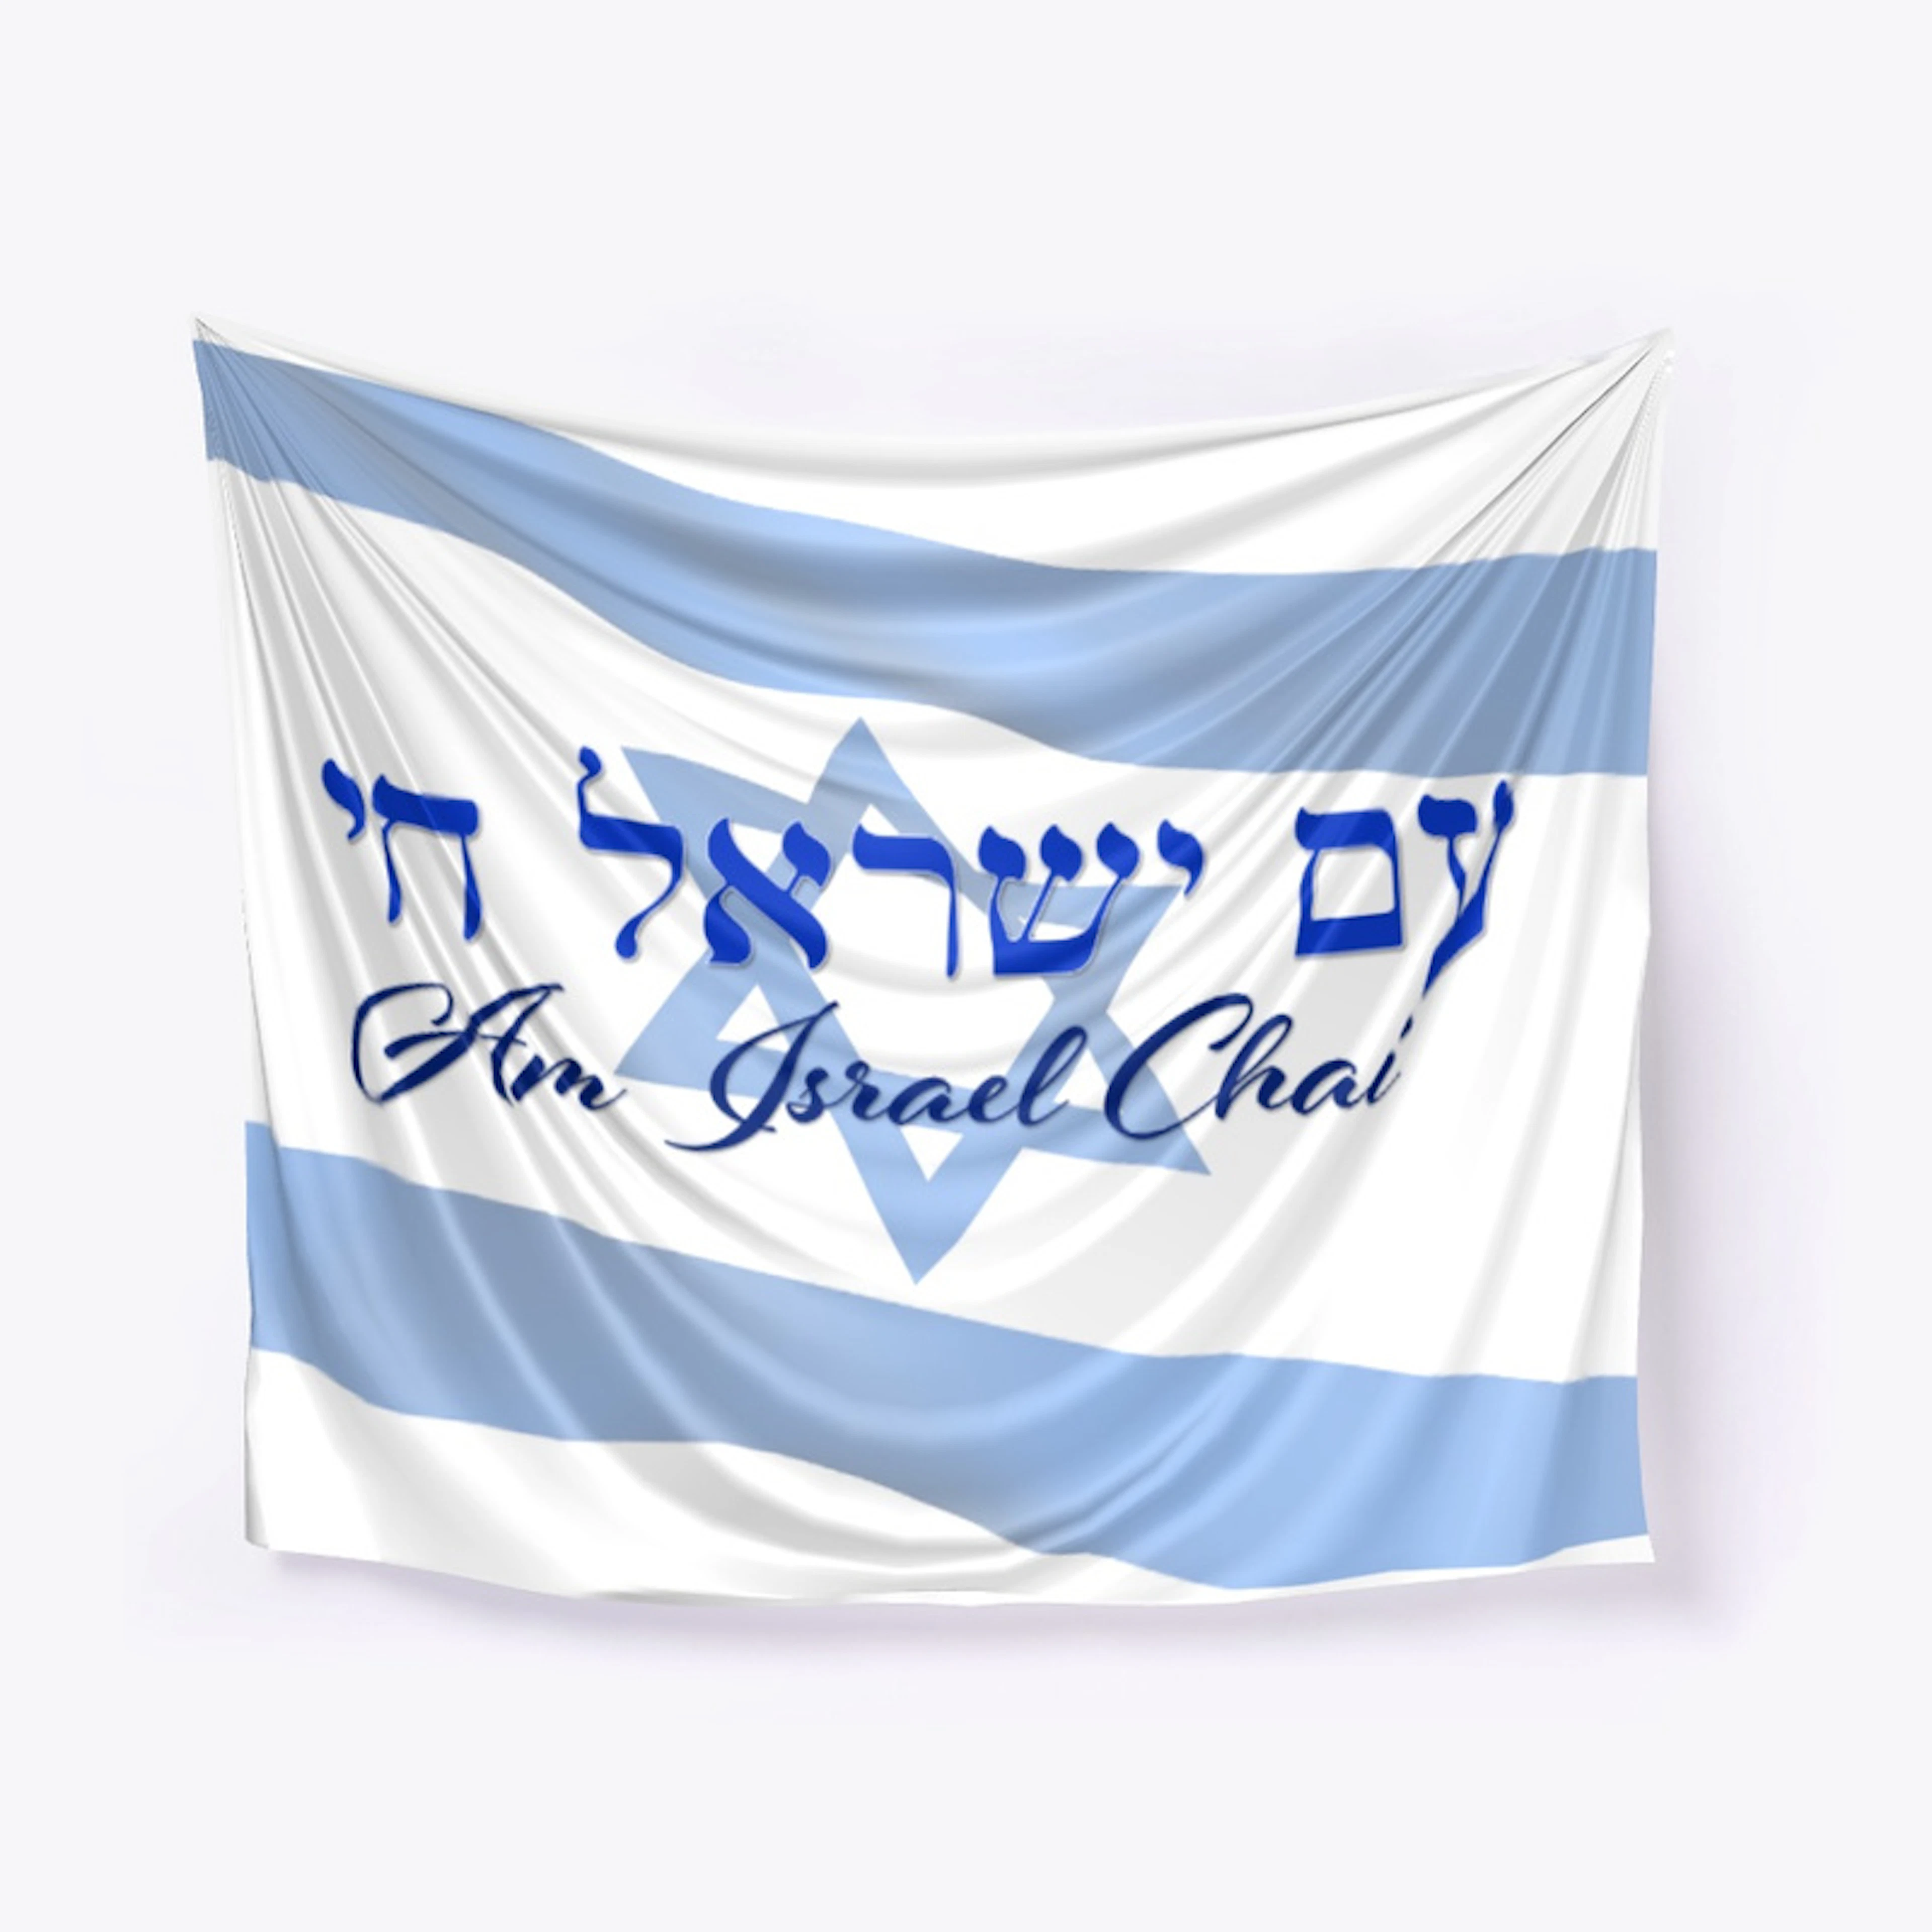 AM ISRAEL CHAI - Beach Towel